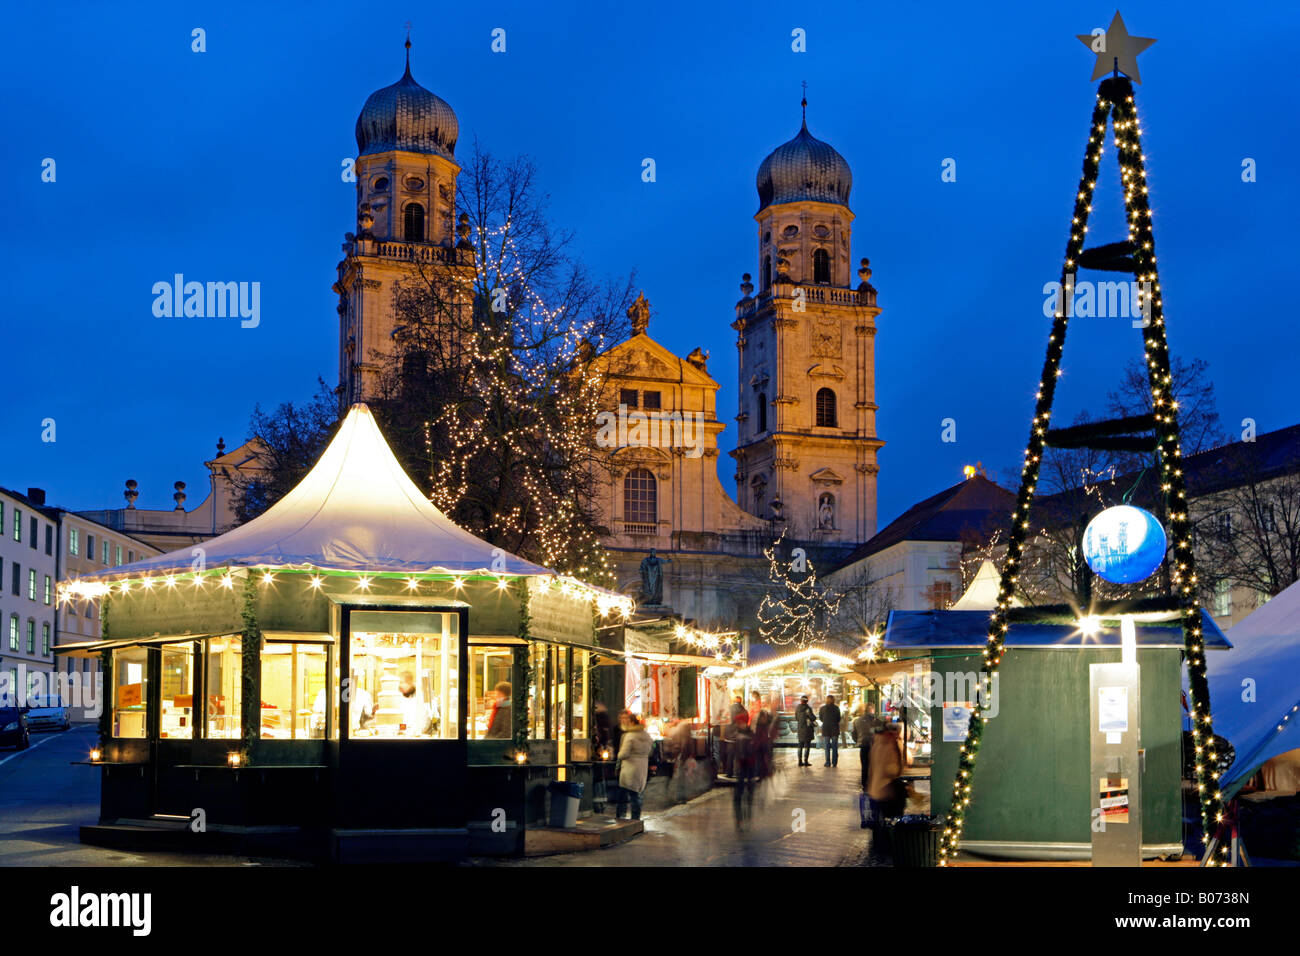 Weihnachtsmarkt am Domplatz in Passau, christmas market in Passau